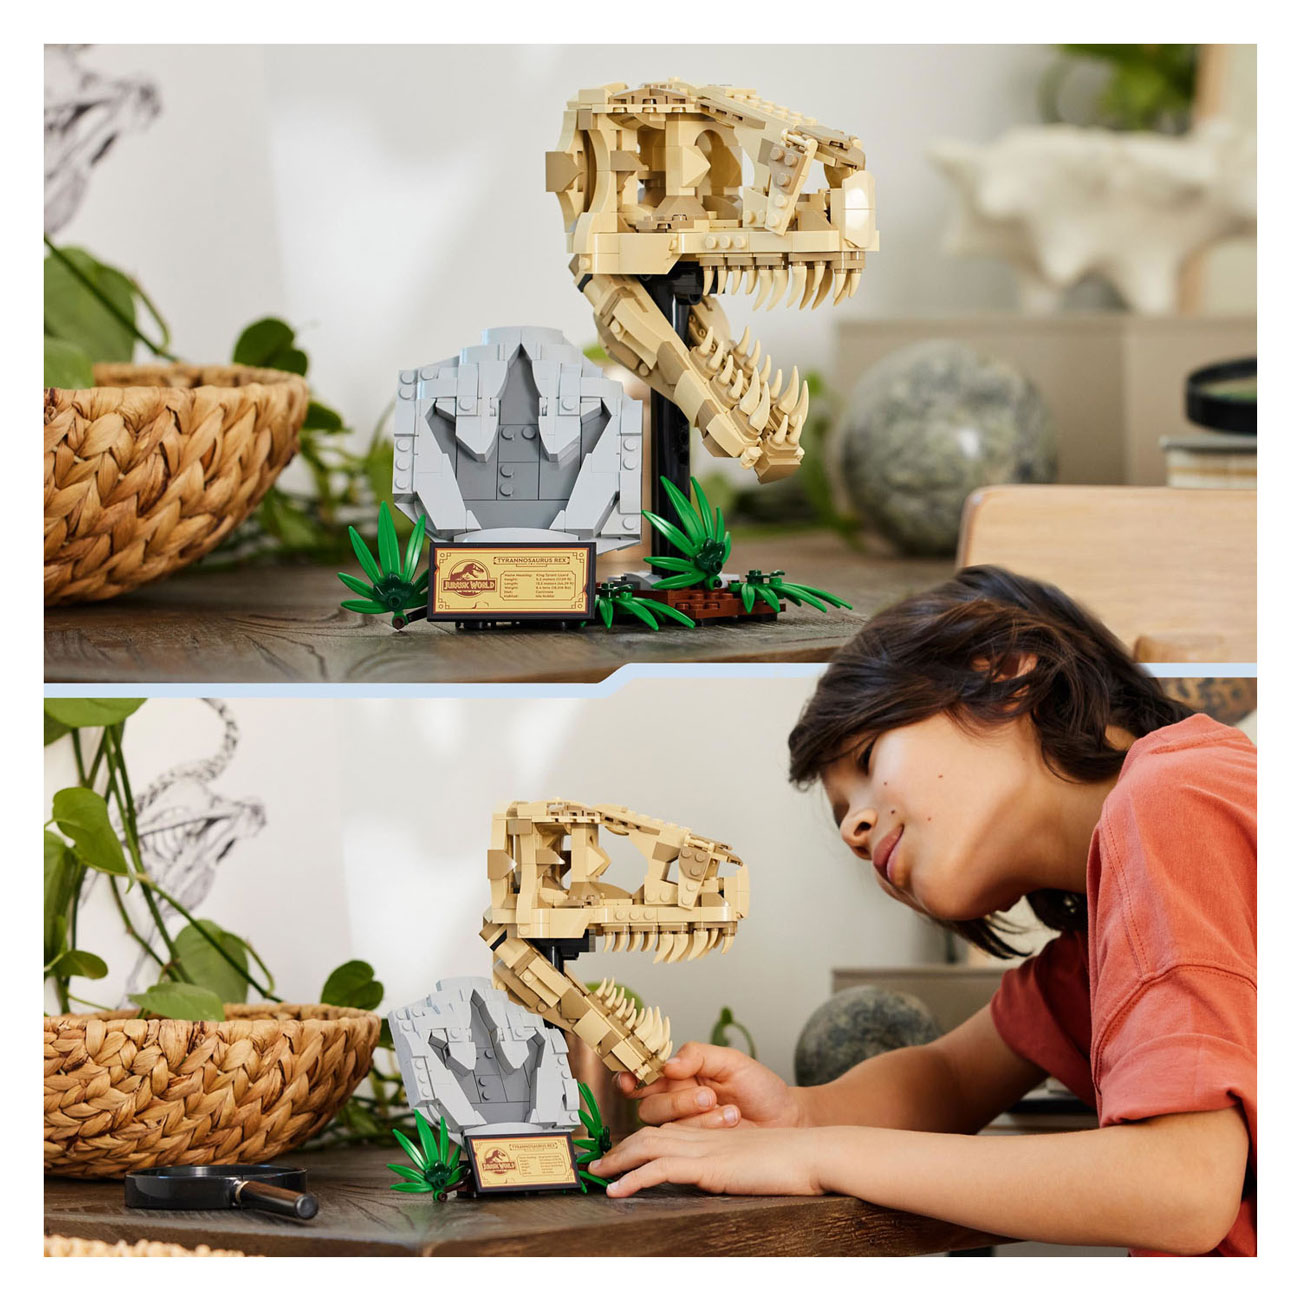 LEGO Jurassic World 76964 Dinosaurierfossilien: T-Rex-Schädel